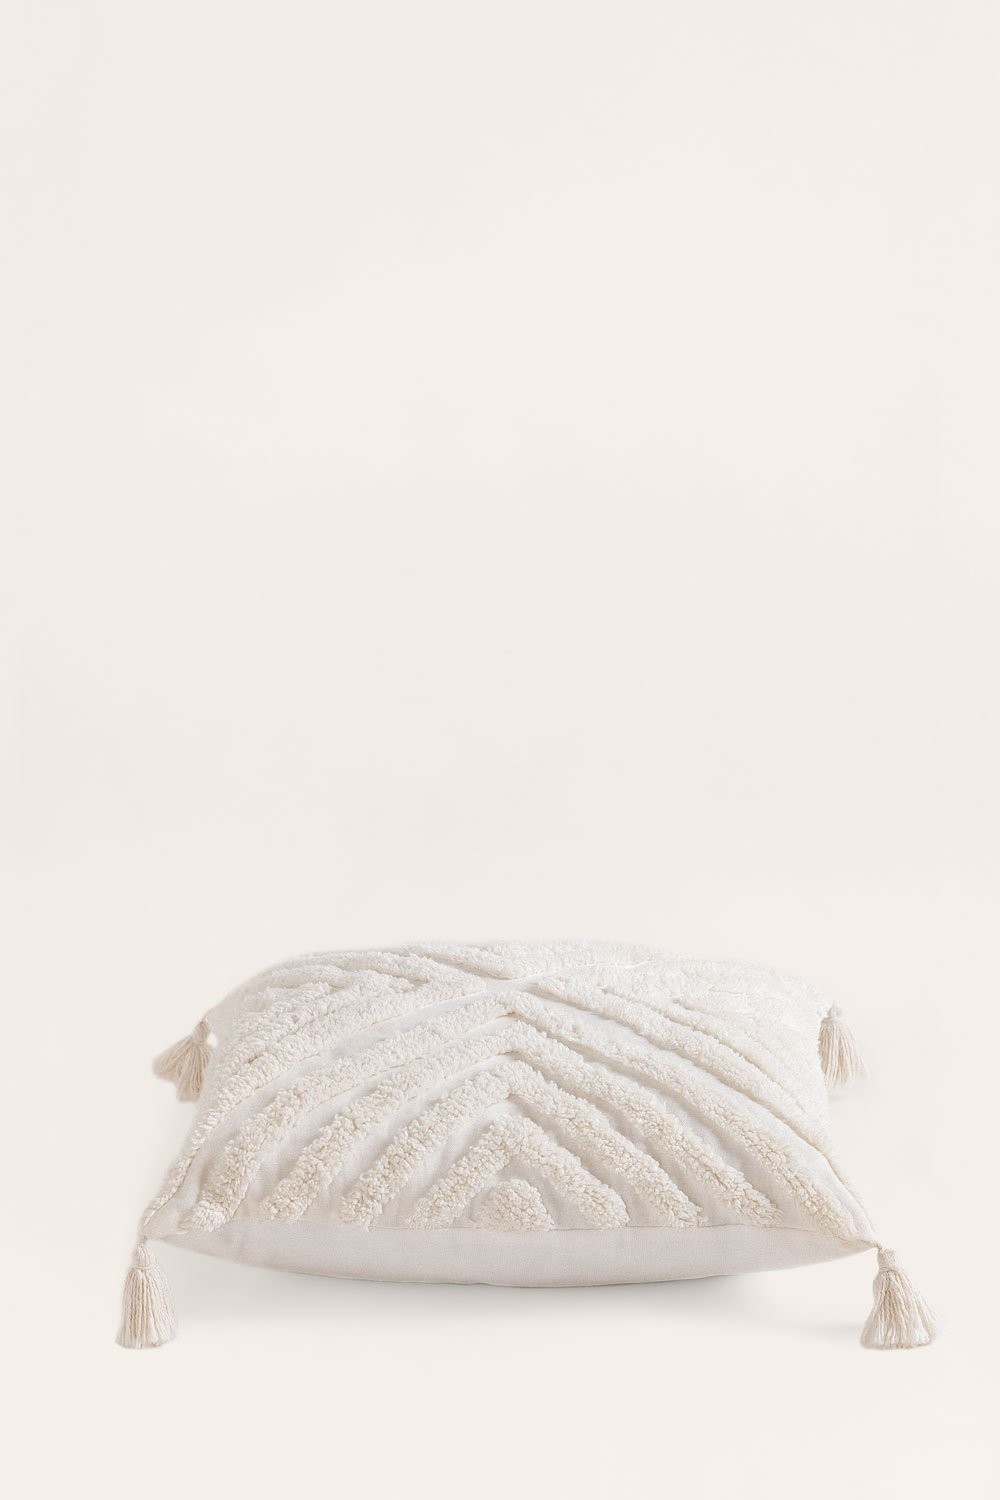 Cuscino quadrato in cotone (45x45 cm) Reik, immagine della galleria 2